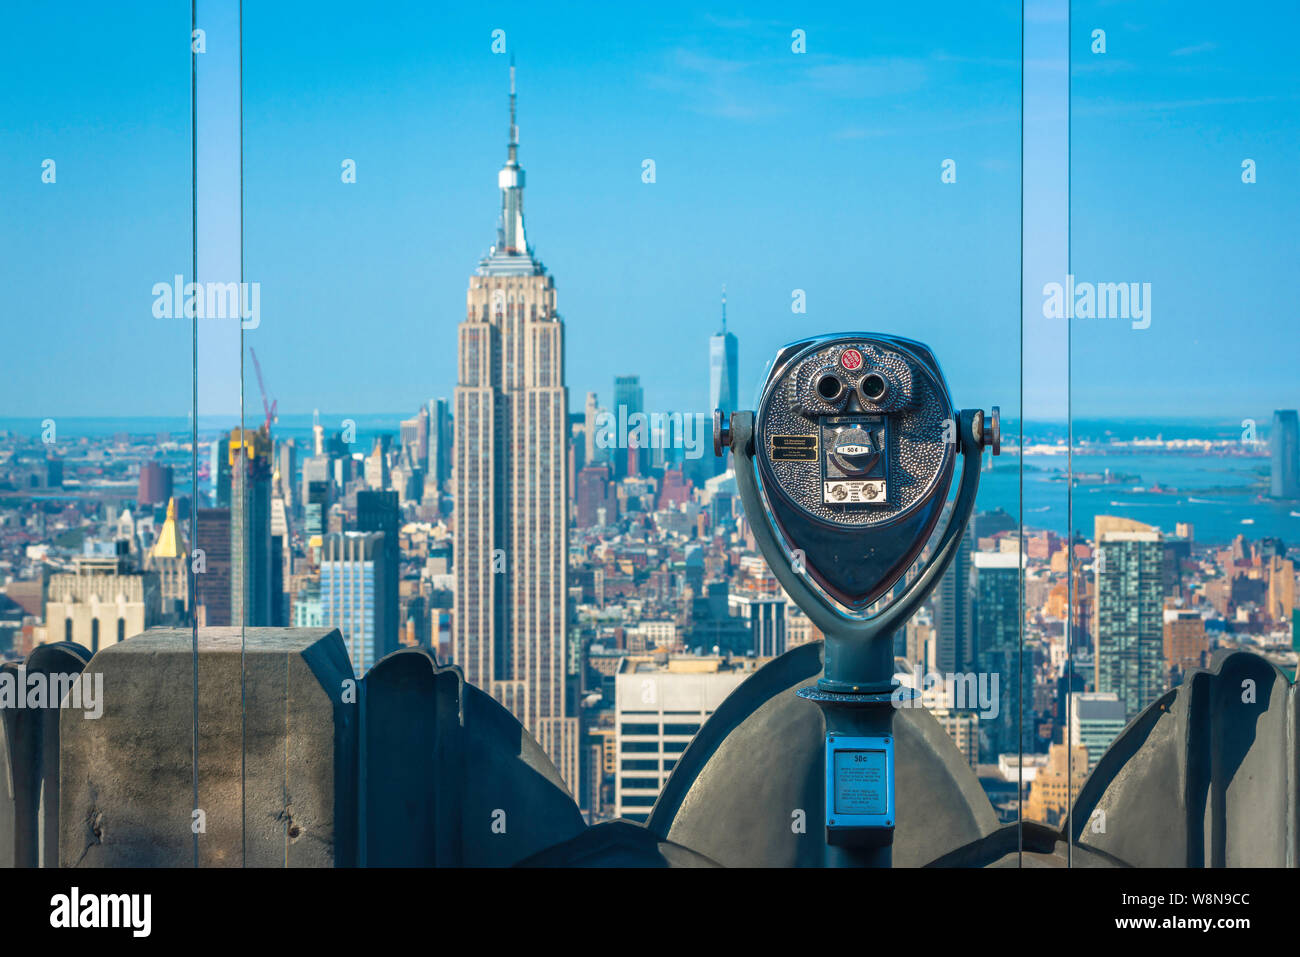 Midtown Manhattan, vista desde la plataforma de observación del Rockefeller Center con el Empire State Building visible más allá de las pantallas de vidrio, la ciudad de Nueva York Foto de stock